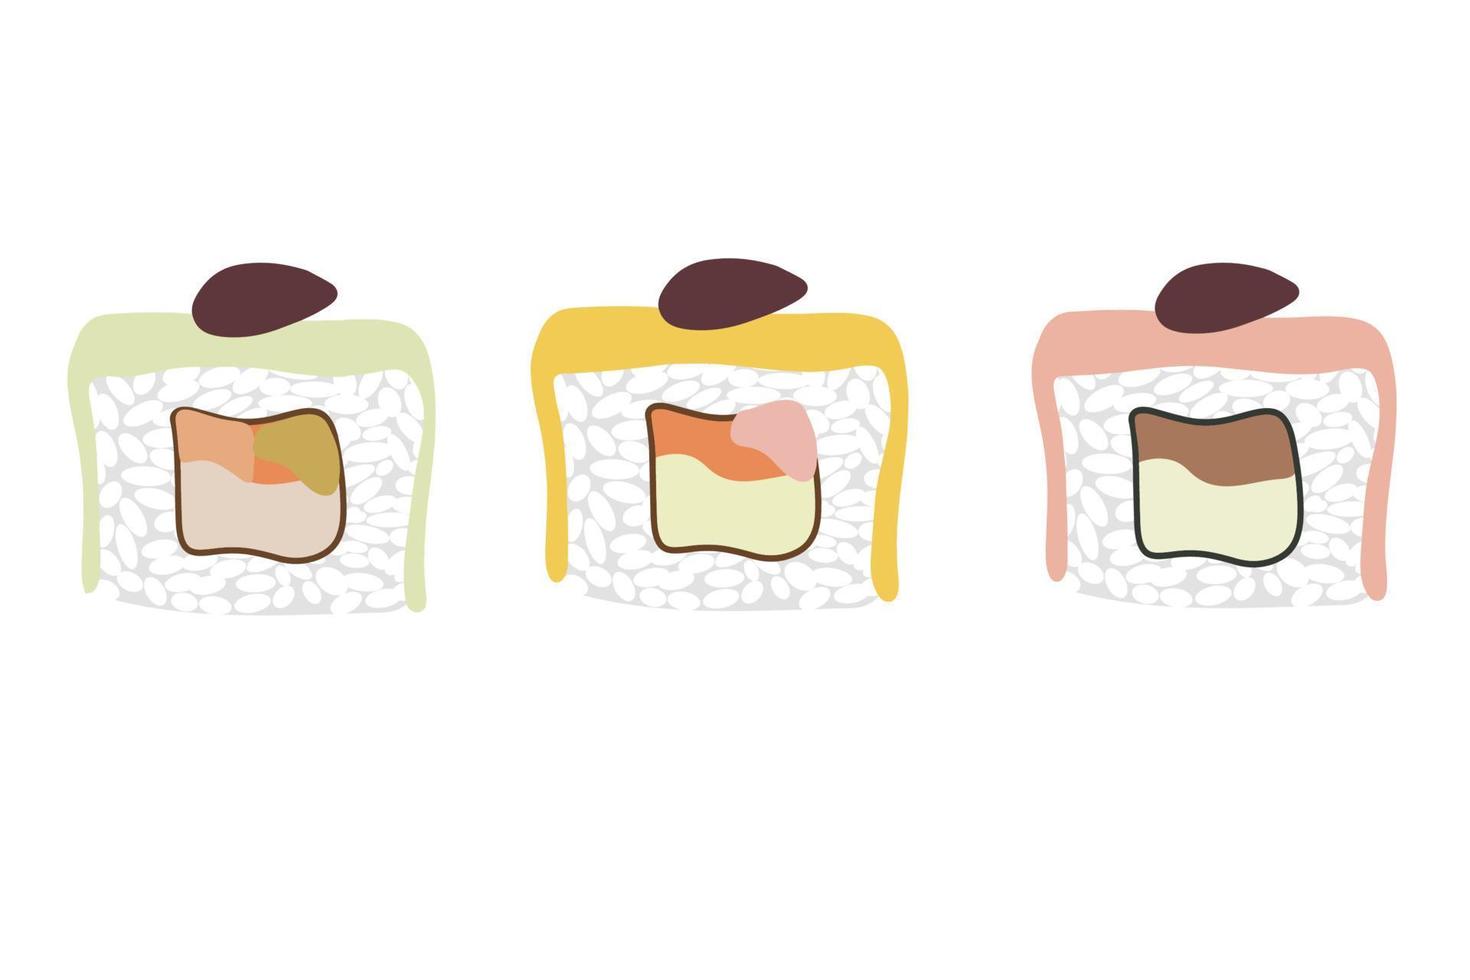 vektor ikon uppsättning av smaskigt färgad sushi rullar. samling av annorlunda smaker och slag. traditionell japansk mat. asiatisk skaldjur grupp.